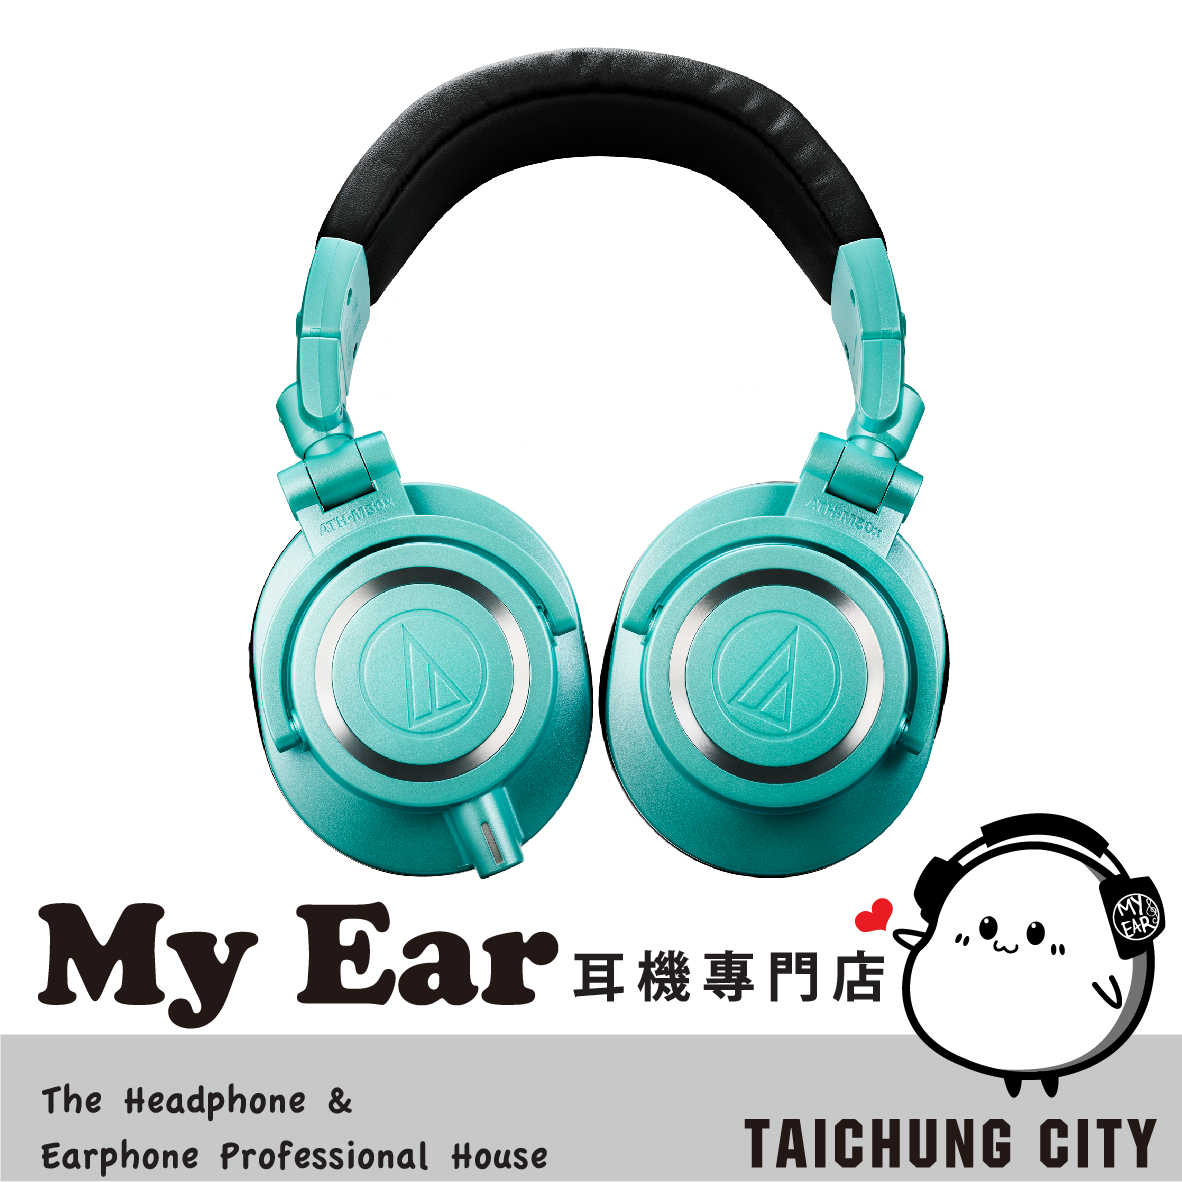 鐵三角 ATH-M50X 專業用 監聽 耳罩式 耳機 冰藍色 IB | My Ear 耳機專門店